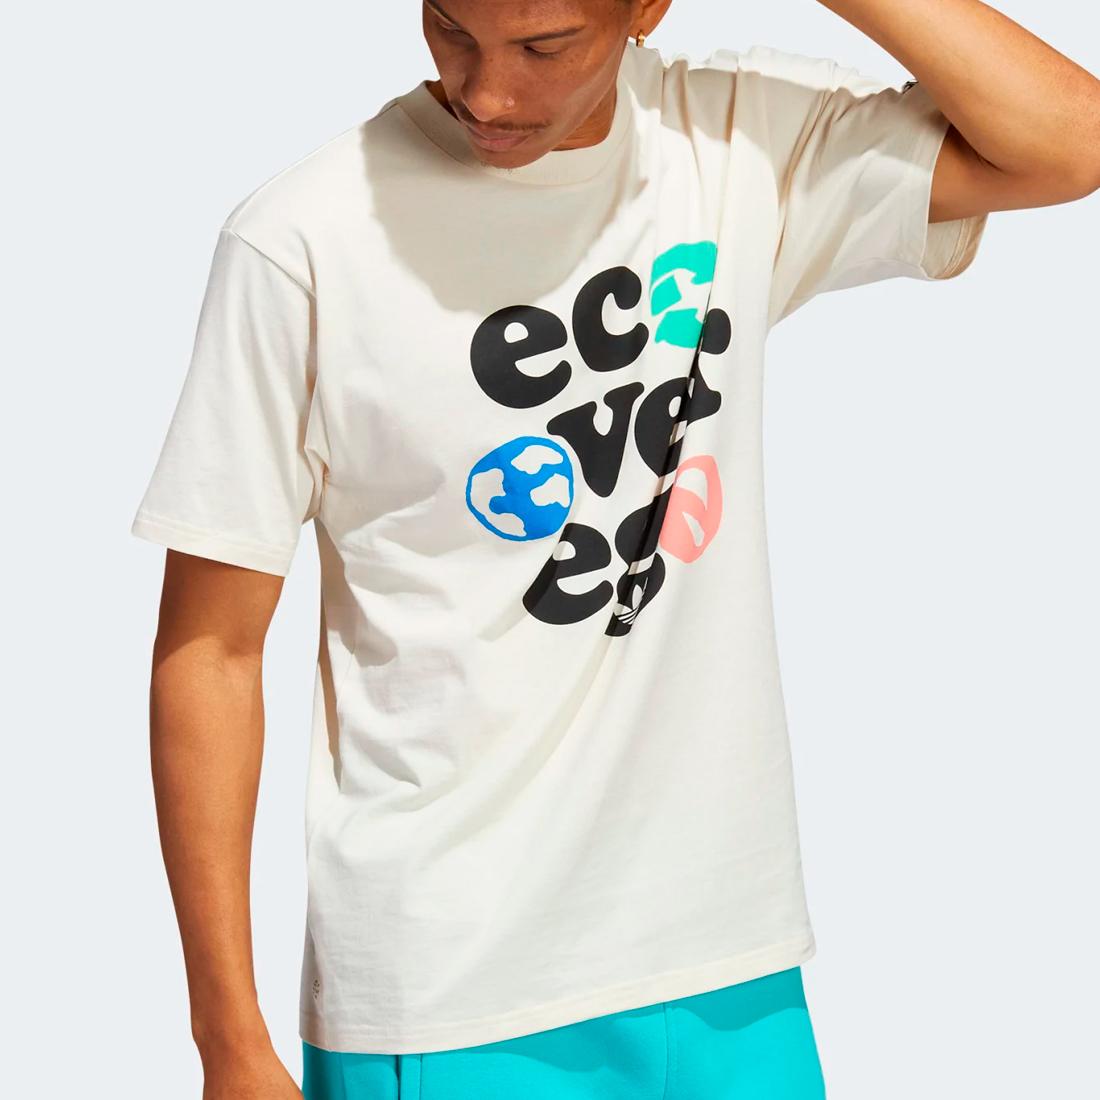 Adidas Eco Over Ego tee nondye/multco